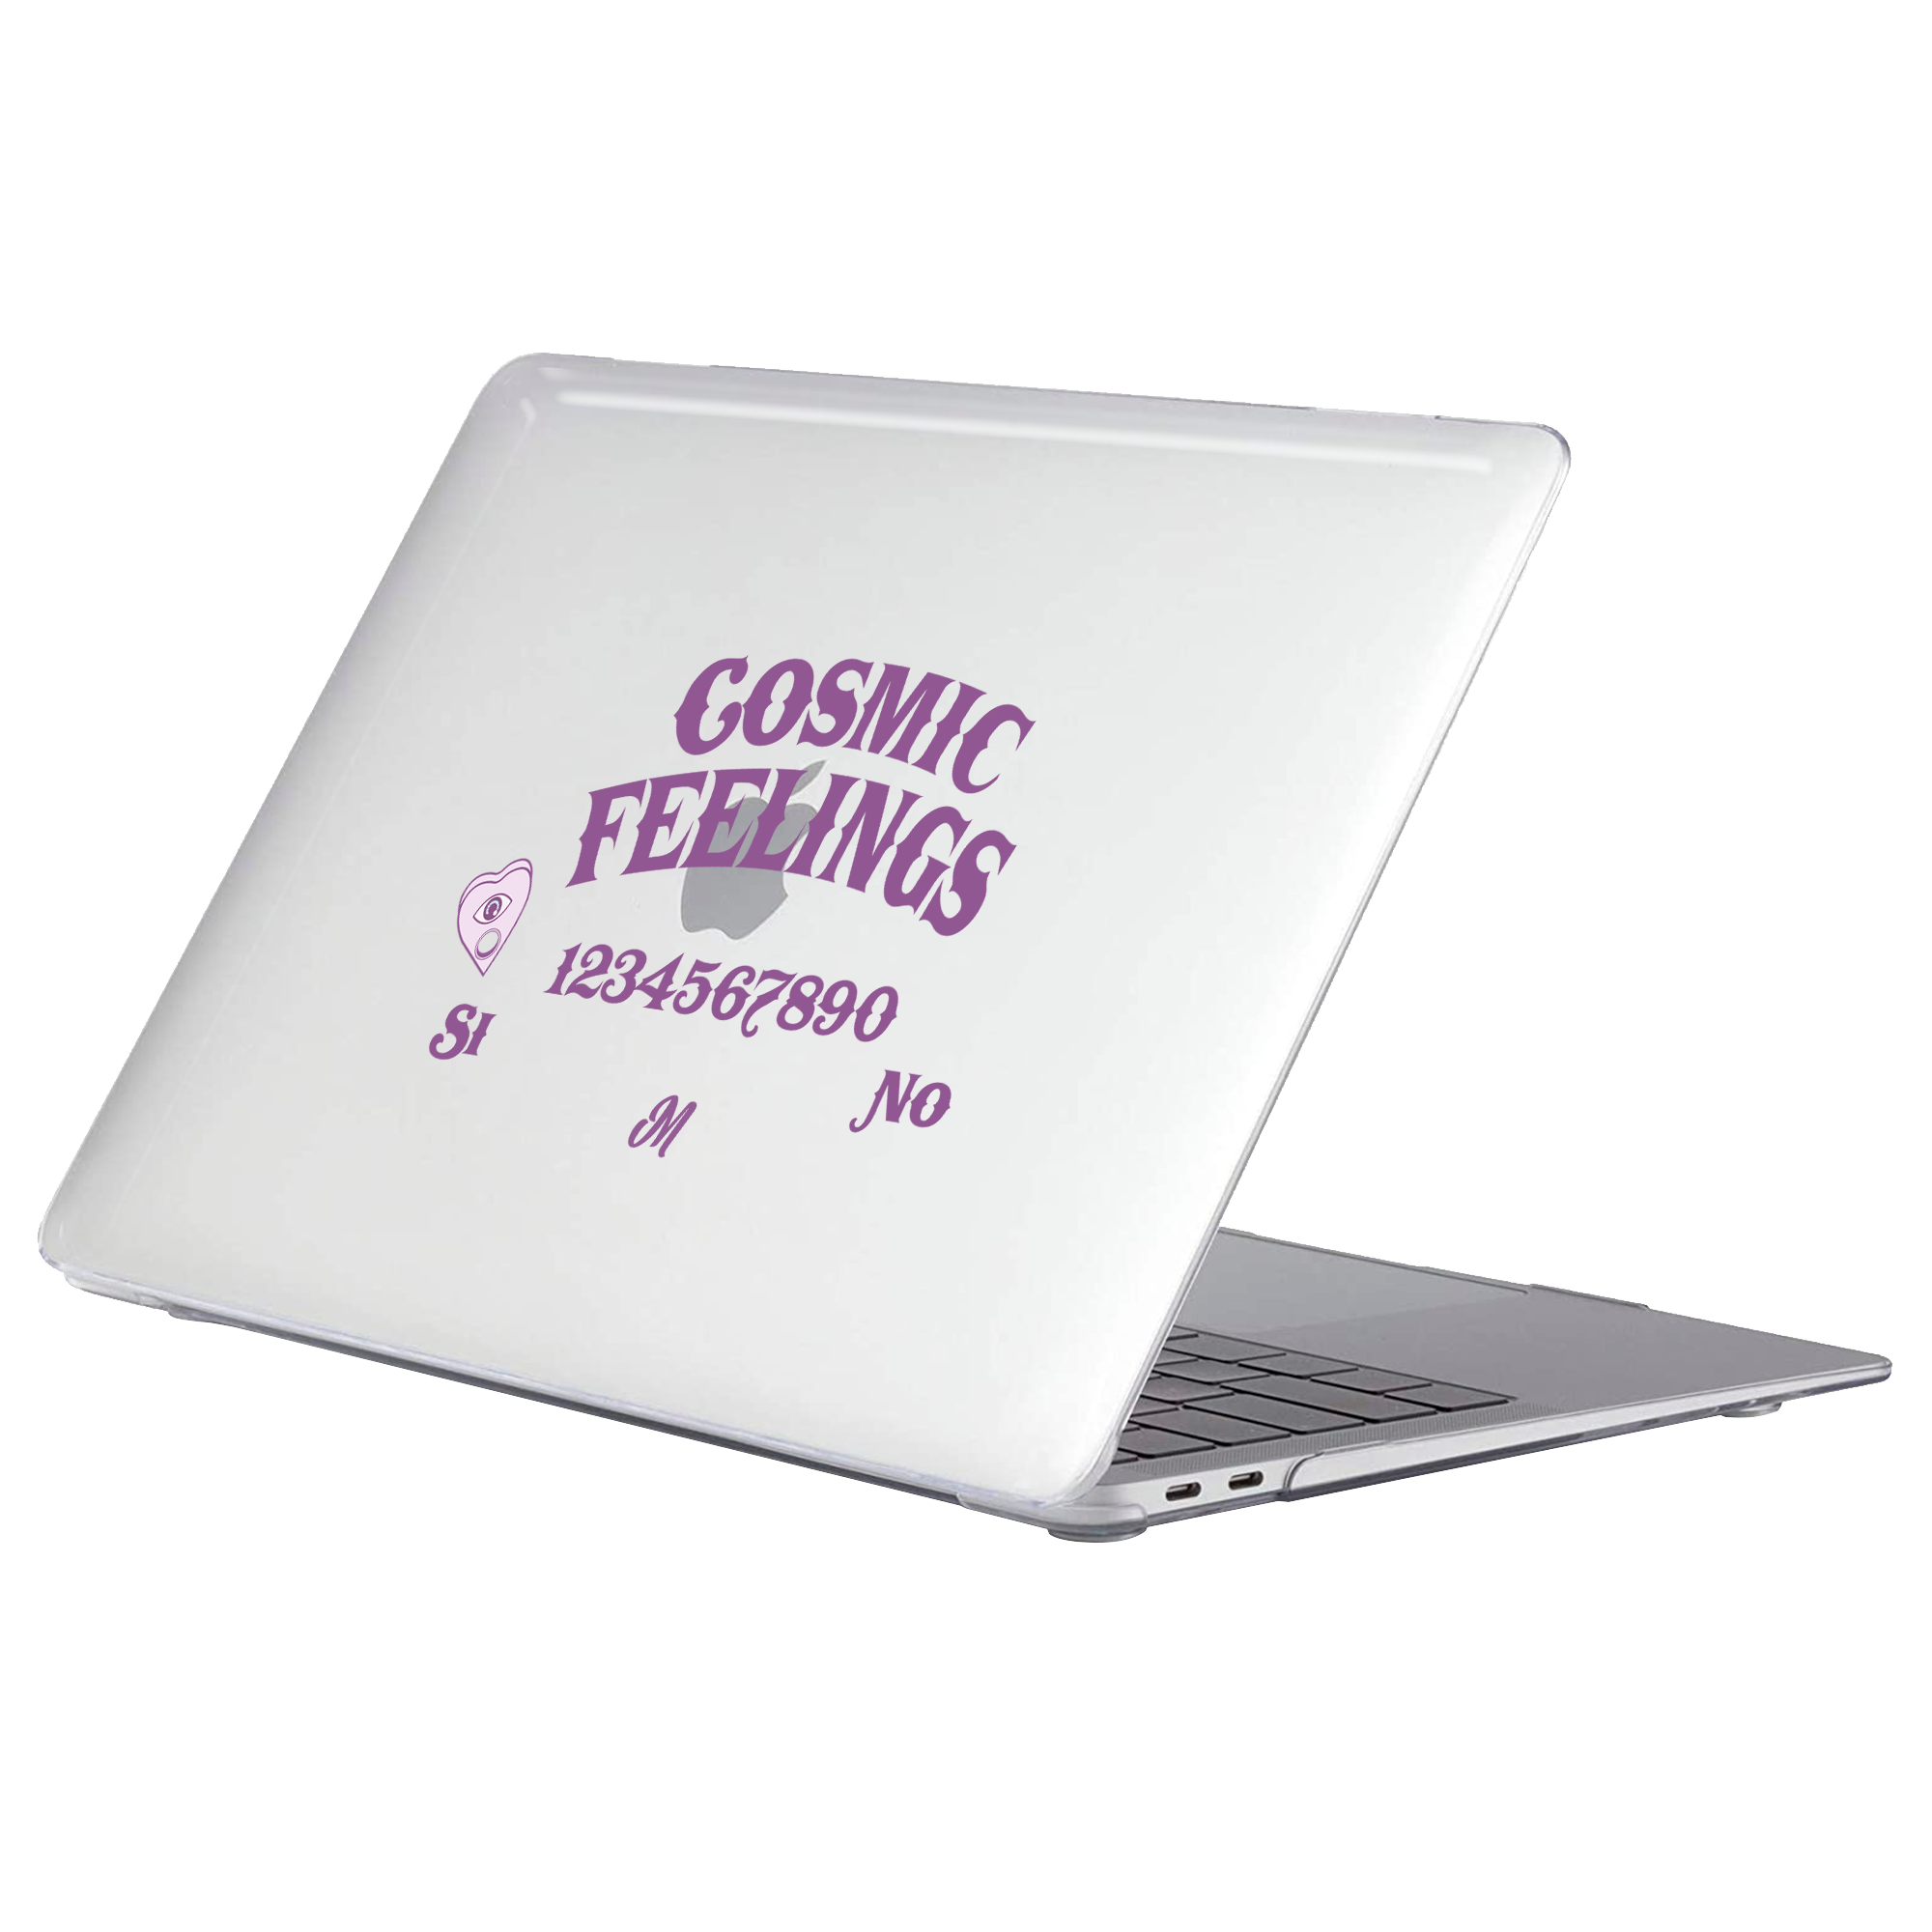 Cosmic Feelings MacBook Case - Mandala Cases